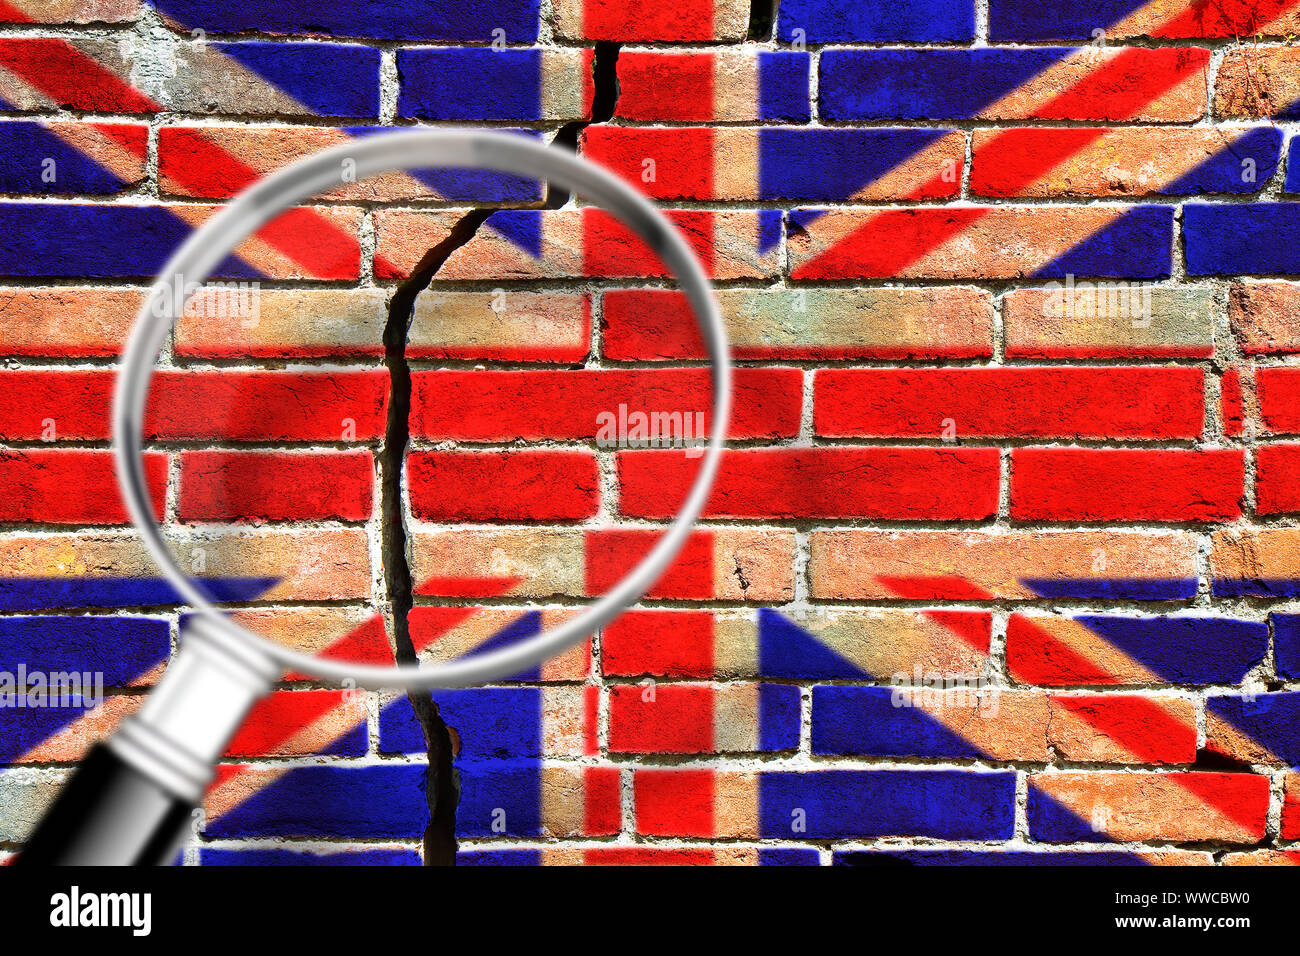 Risse im Mauerwerk mit britischer Flagge - die Erforschung der Gründe von brexit Konzept Bild - Begriff Bild durch ein Vergrößerungsglas gesehen Stockfoto